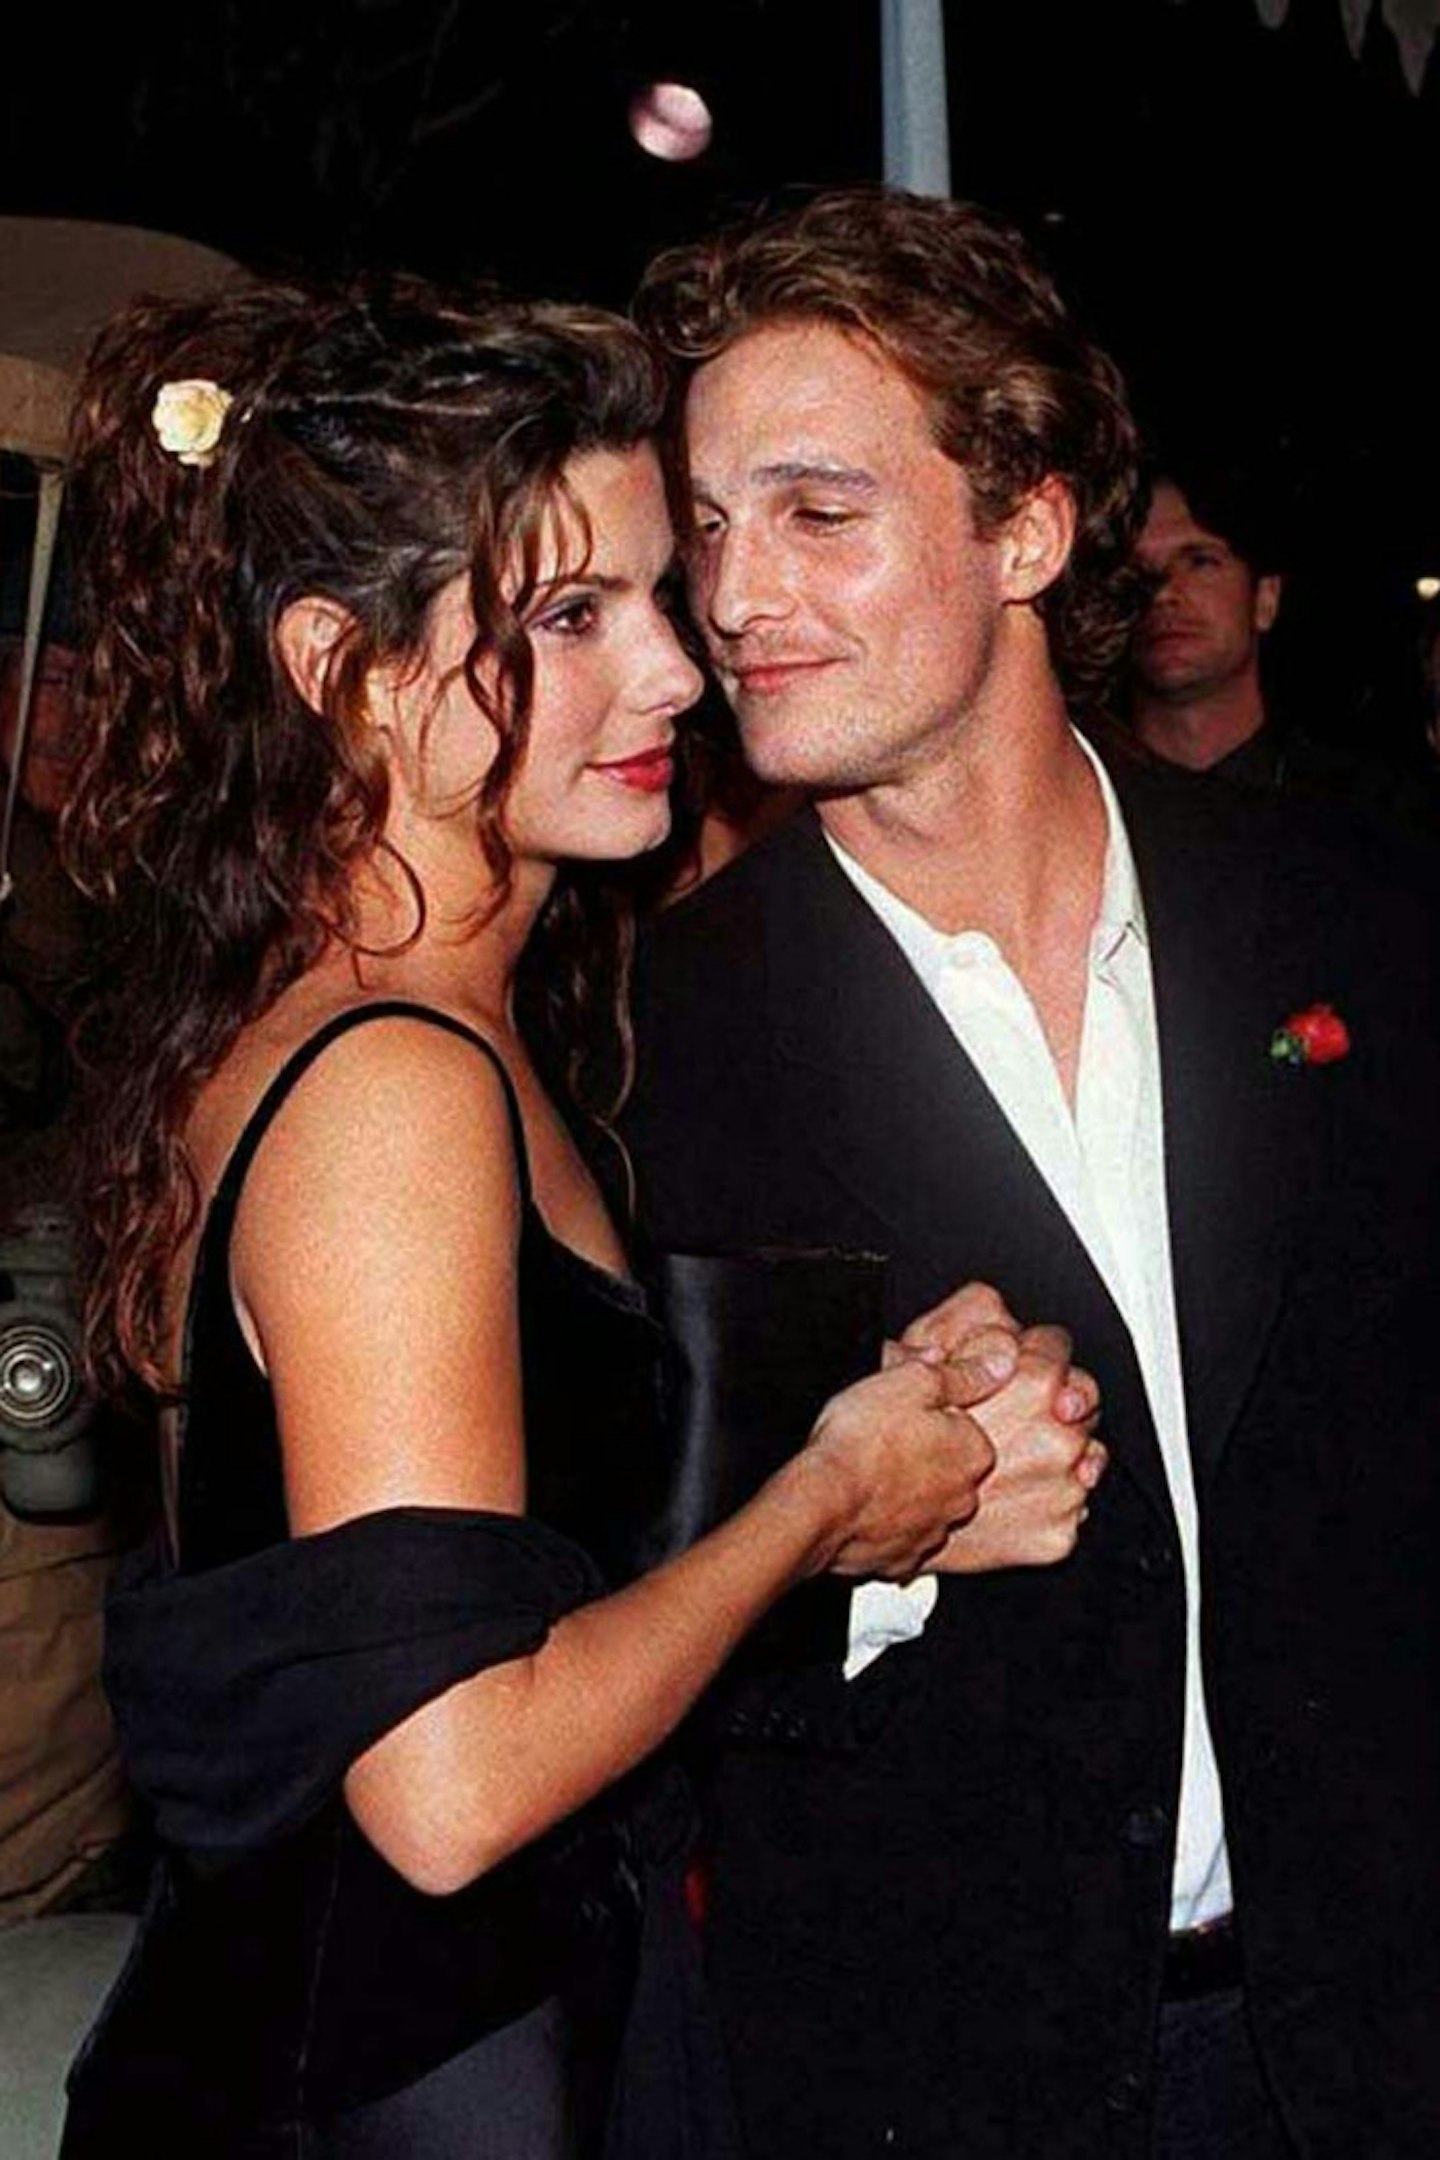 Matthew McConaughey and Sandra Bullock